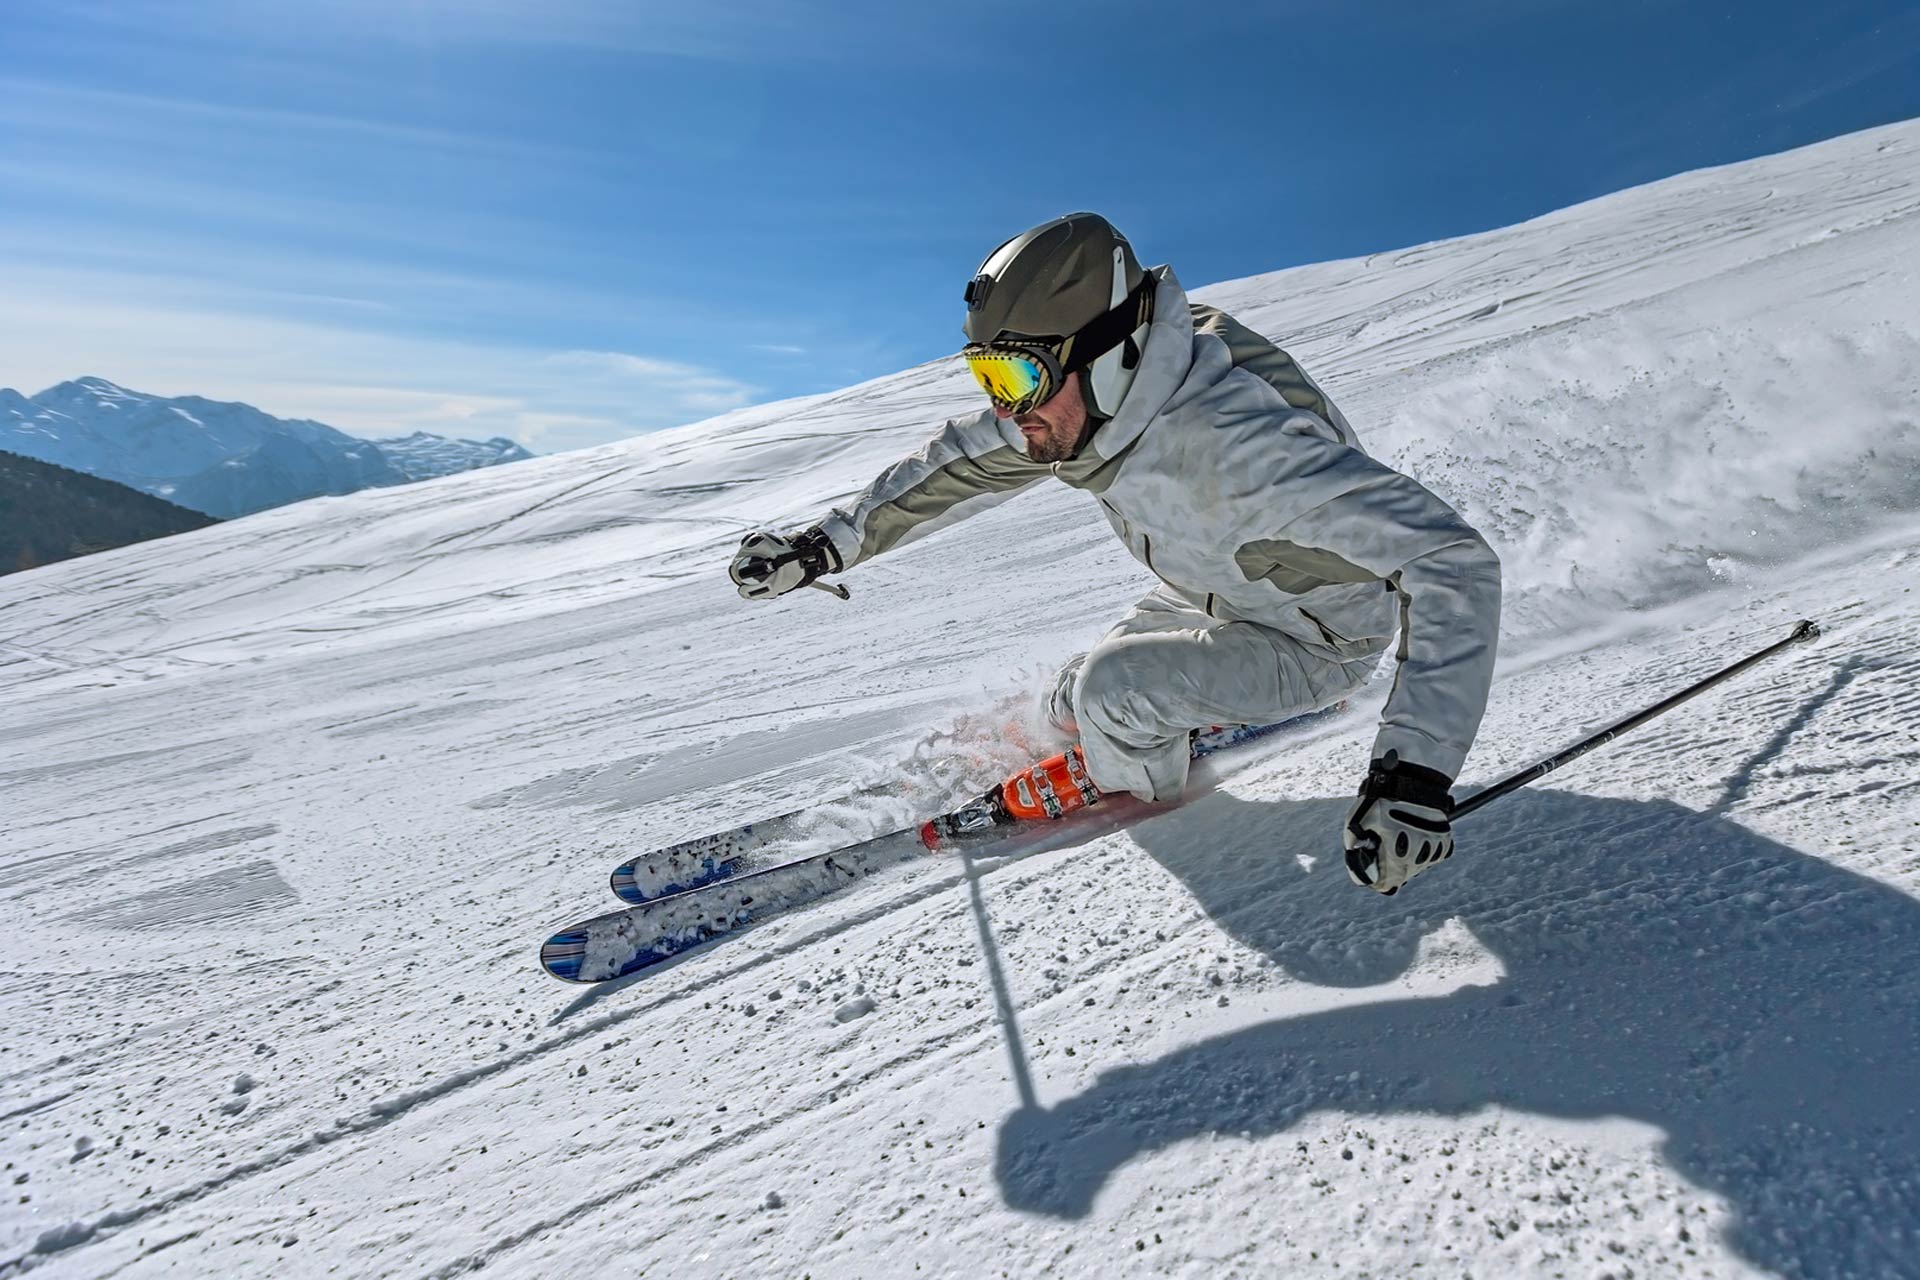 Sangle de snowboard réglable, porte-épaules de bâton de ski, ski